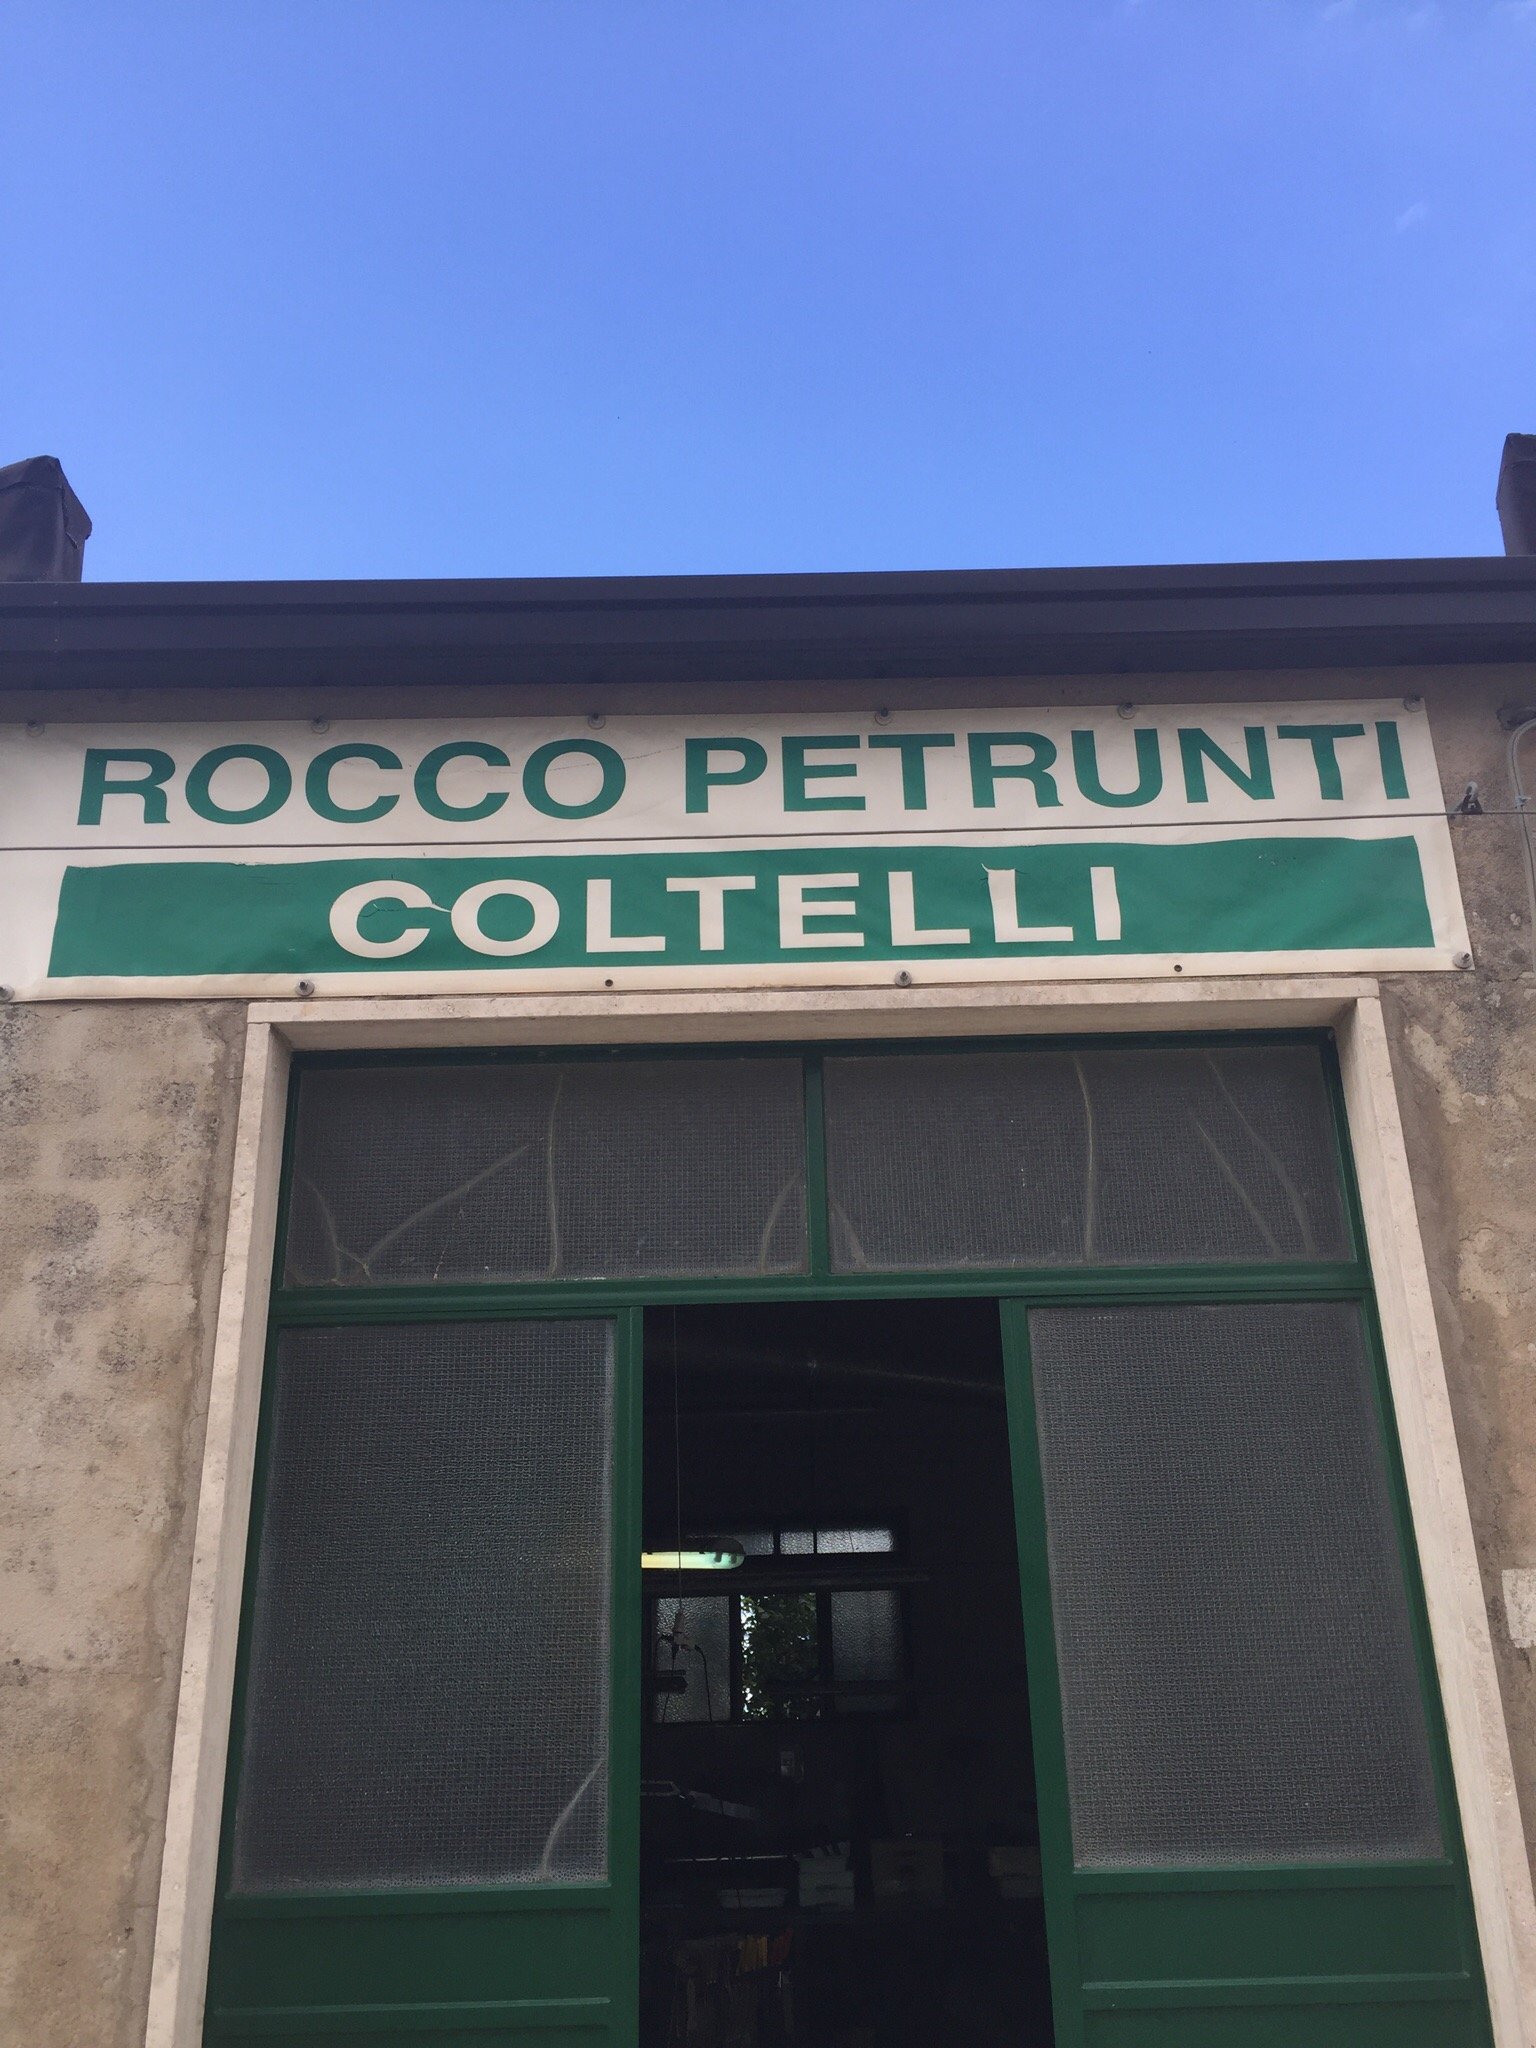 Coltelleria Artigianale Rocco Petrunti